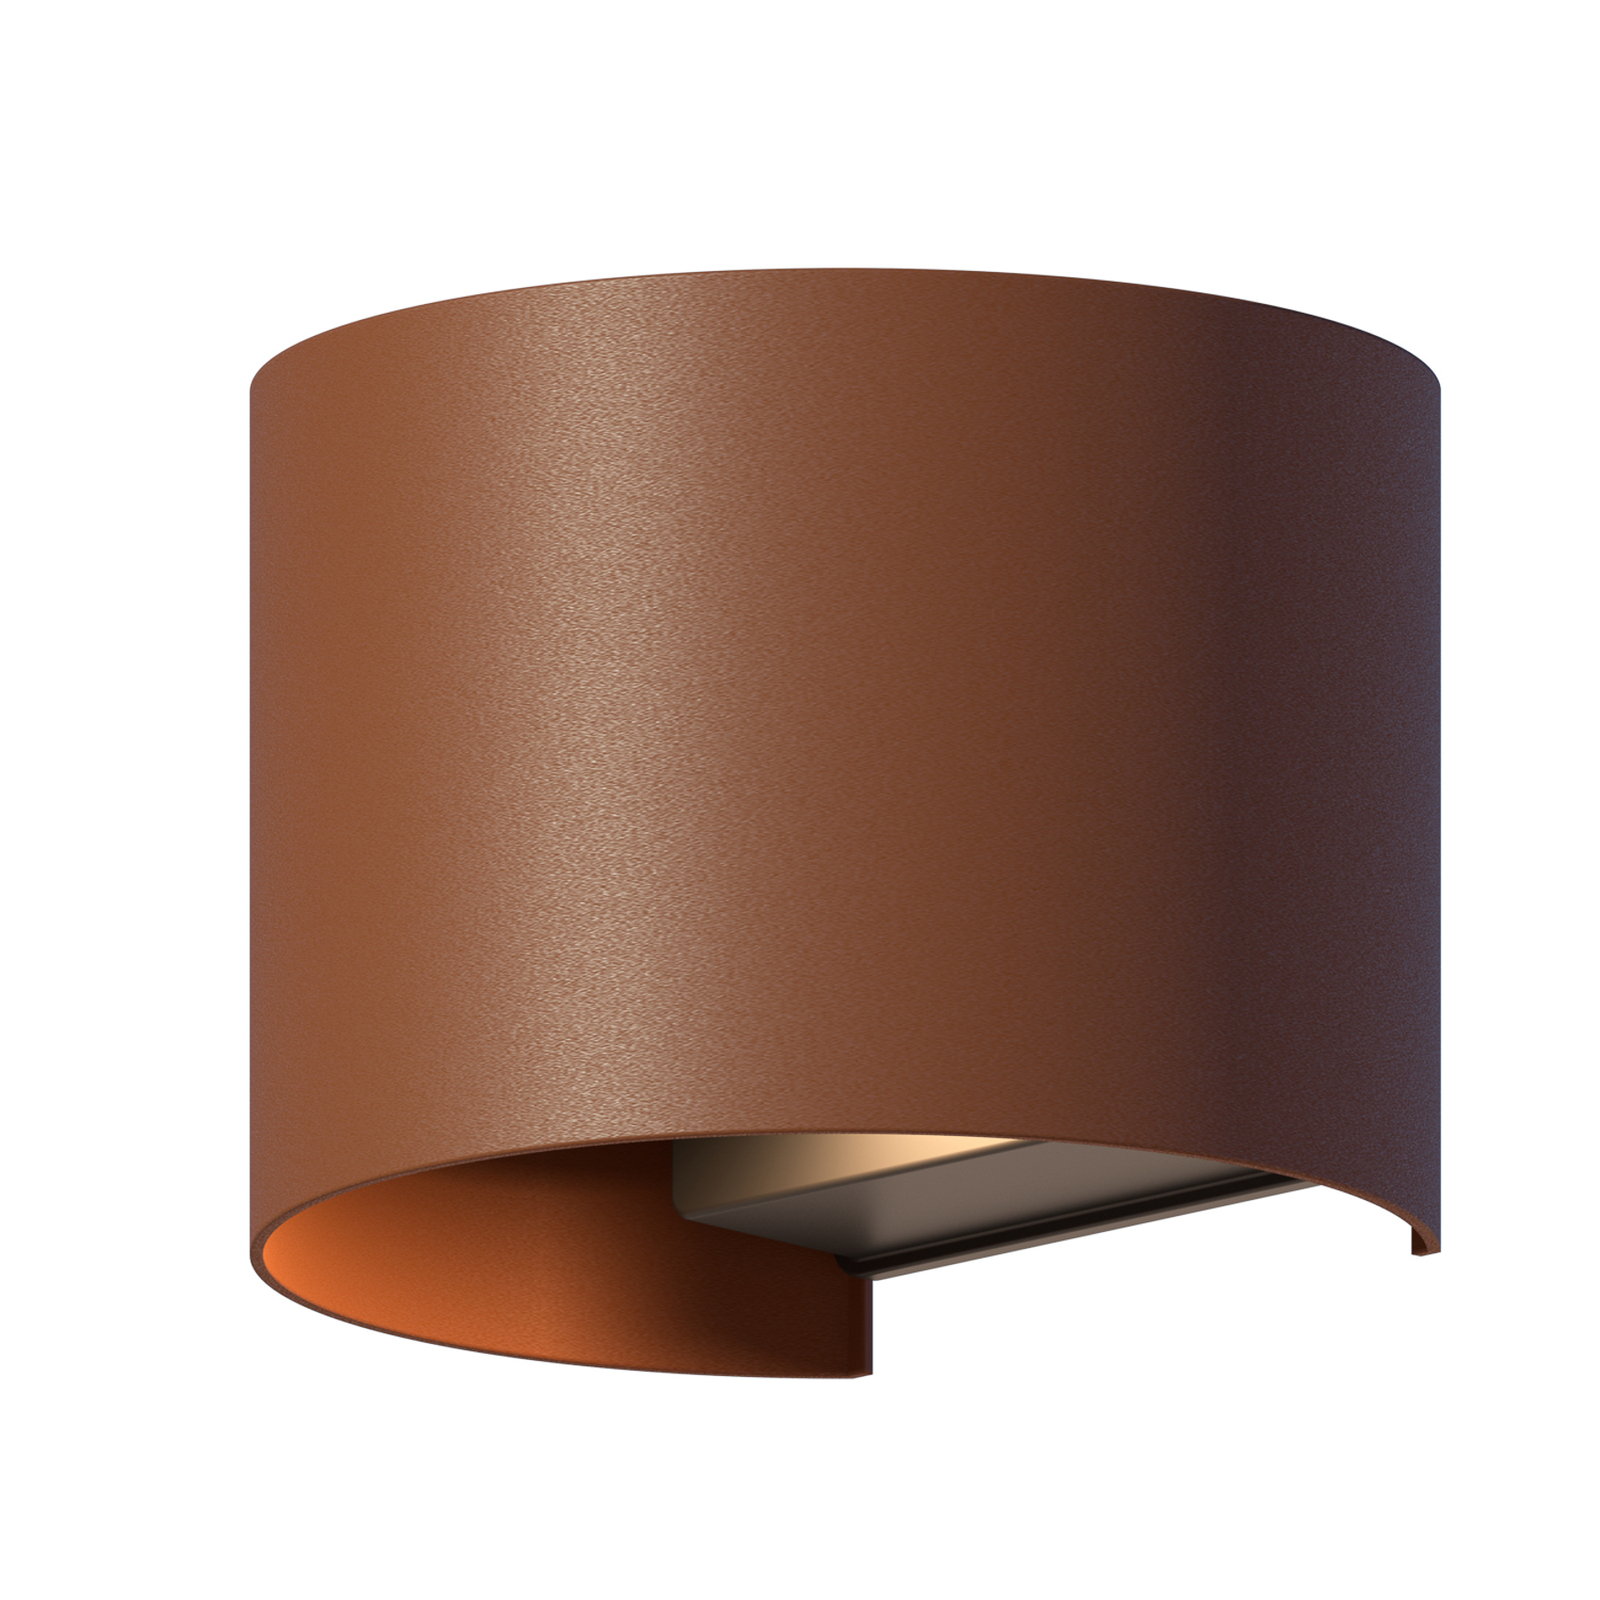 Calex kinkiet zewnętrzny LED Oval, Up/Down, wysokość 10cm, rdzawobrązowy